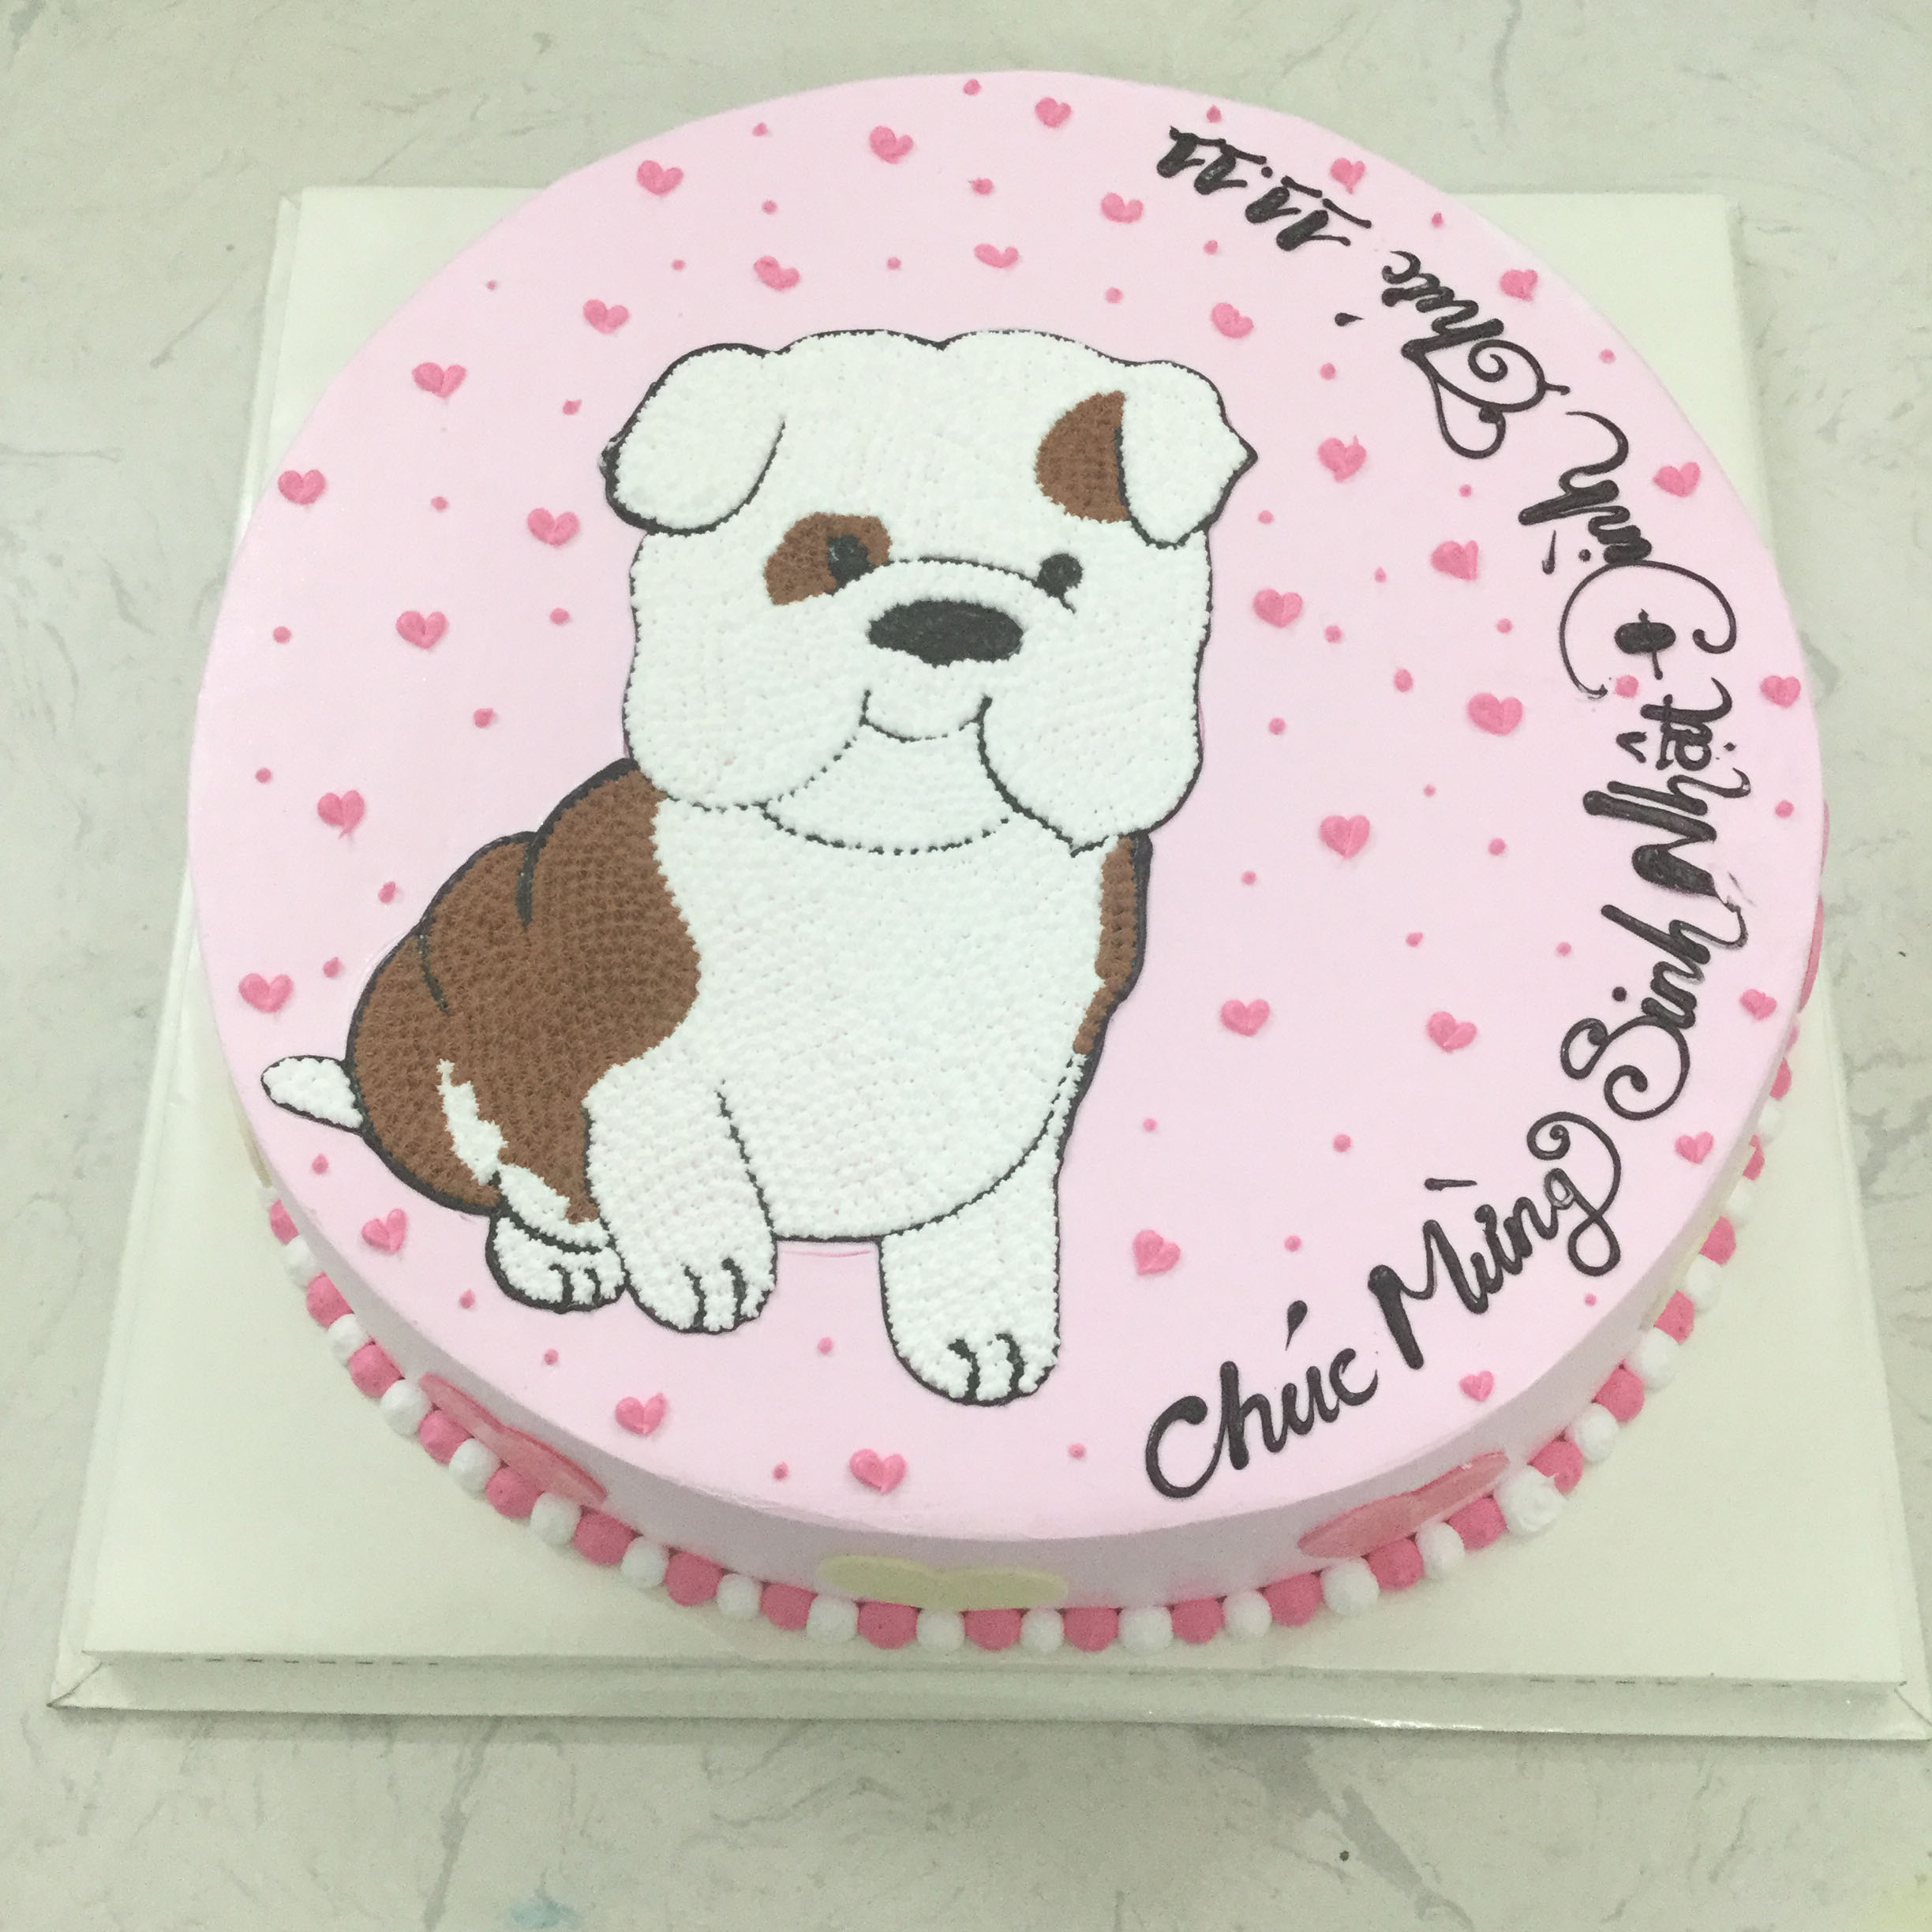 Bánh kem sinh nhật vẽ hình con chó tuổi tuất nâu dễ thương tặng con gái yêu   Bánh Kem Ngộ Nghĩnh